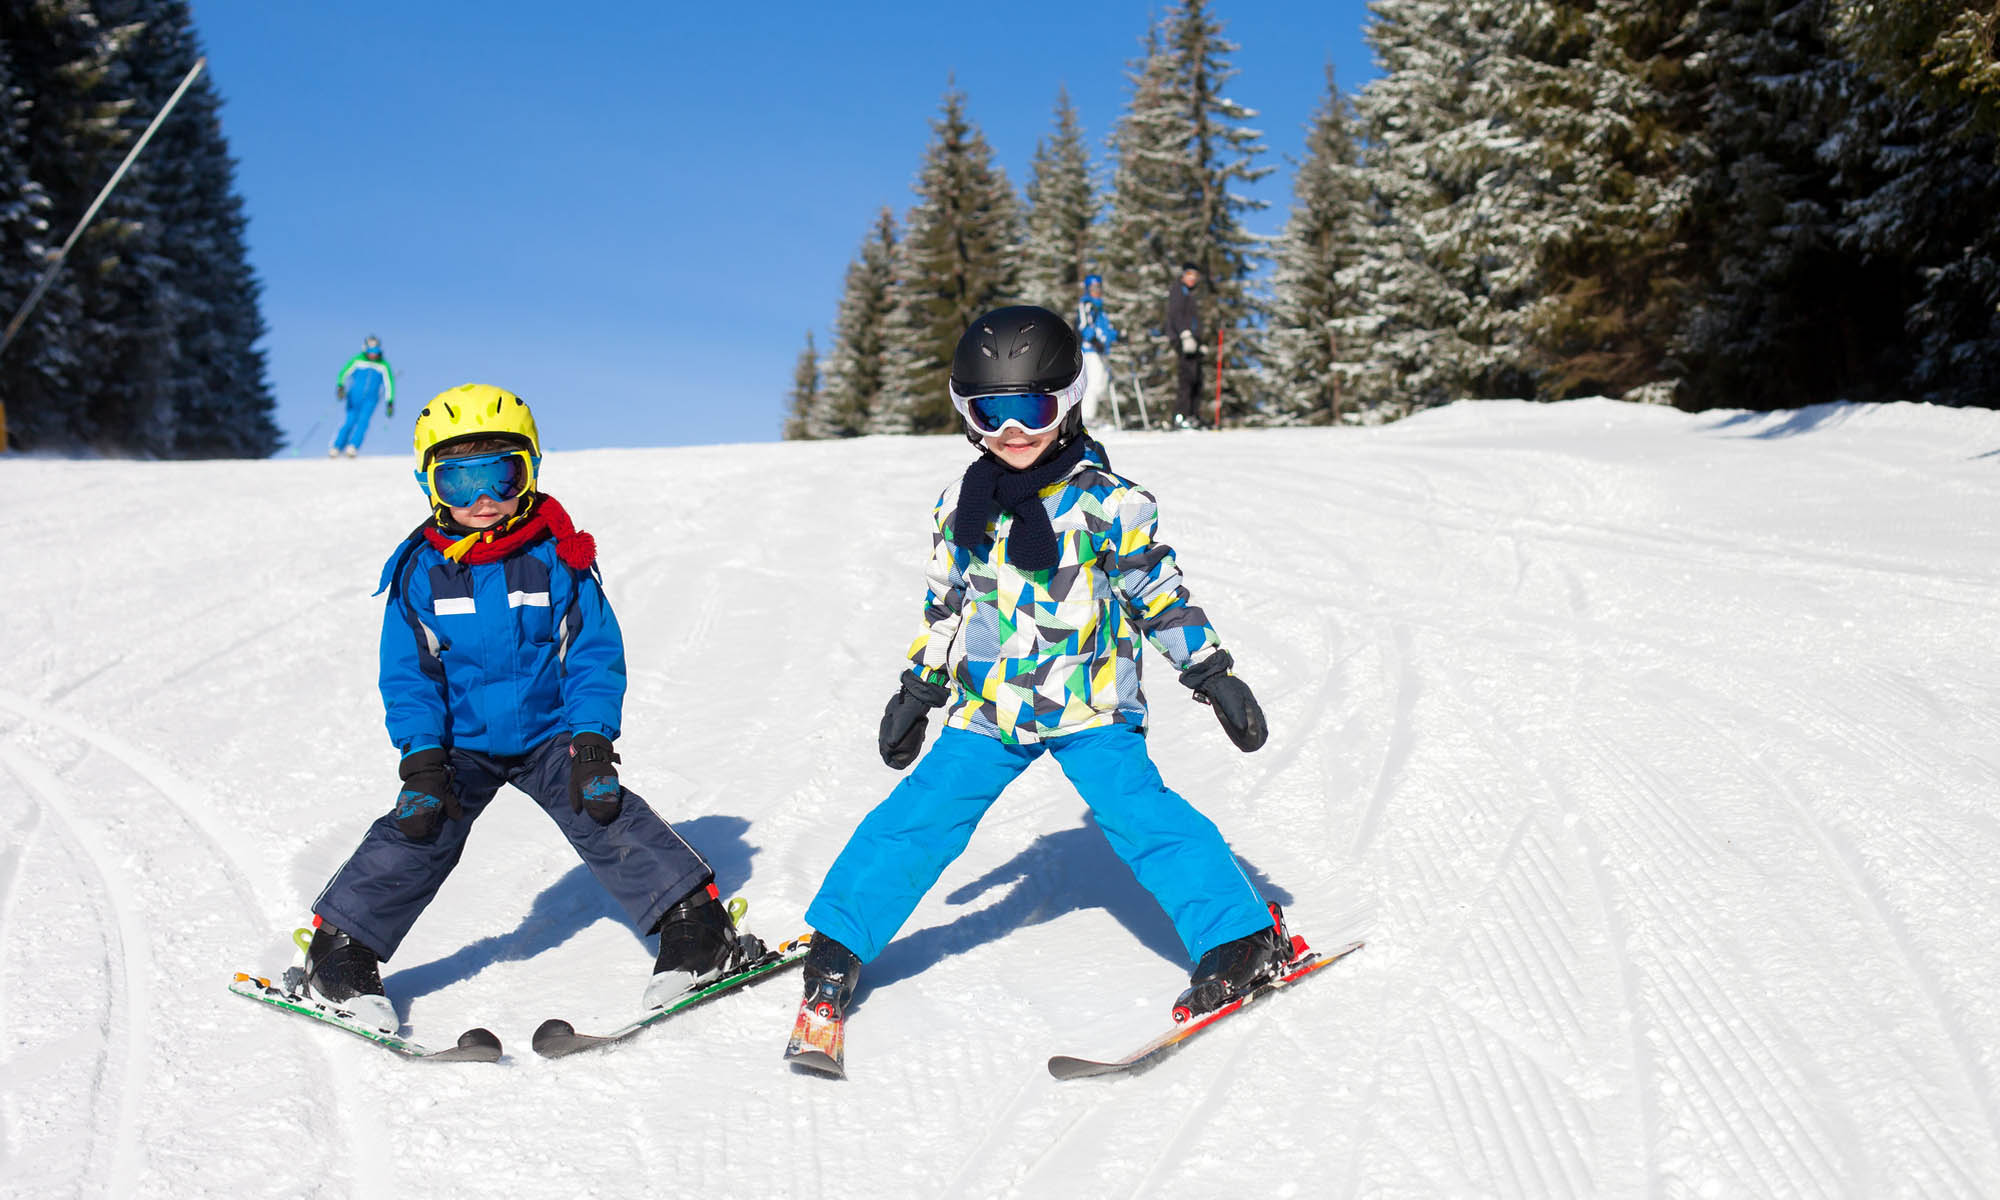 Twee jonge kinderen op ski’s laten zien dat ze de sneeuwploeg beheersen.